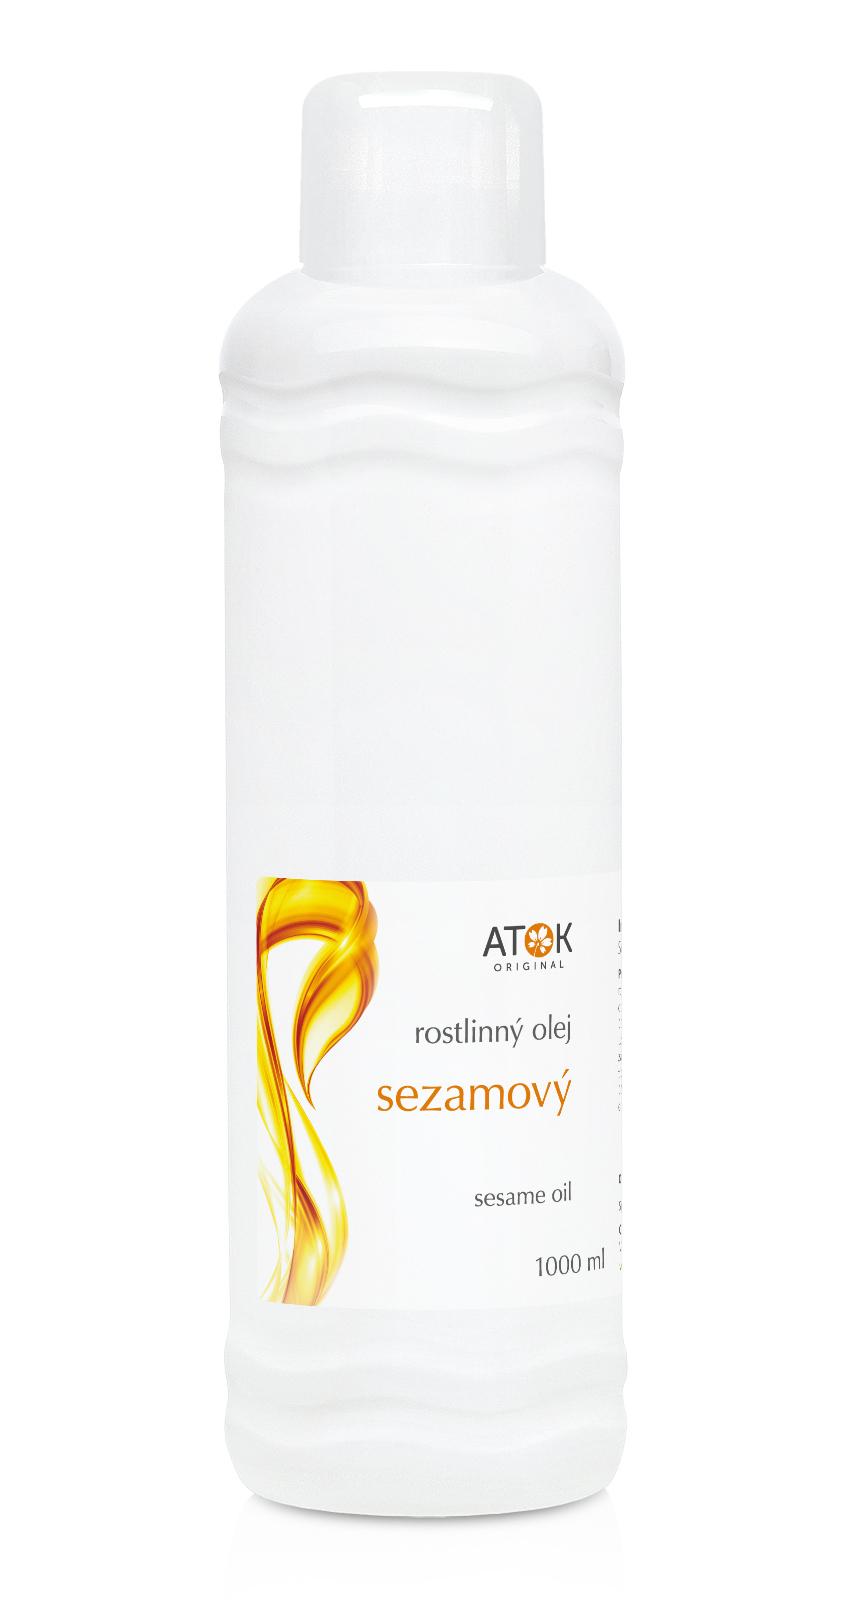 Sezamový olej - Original ATOK Obsah: 1000 ml plast